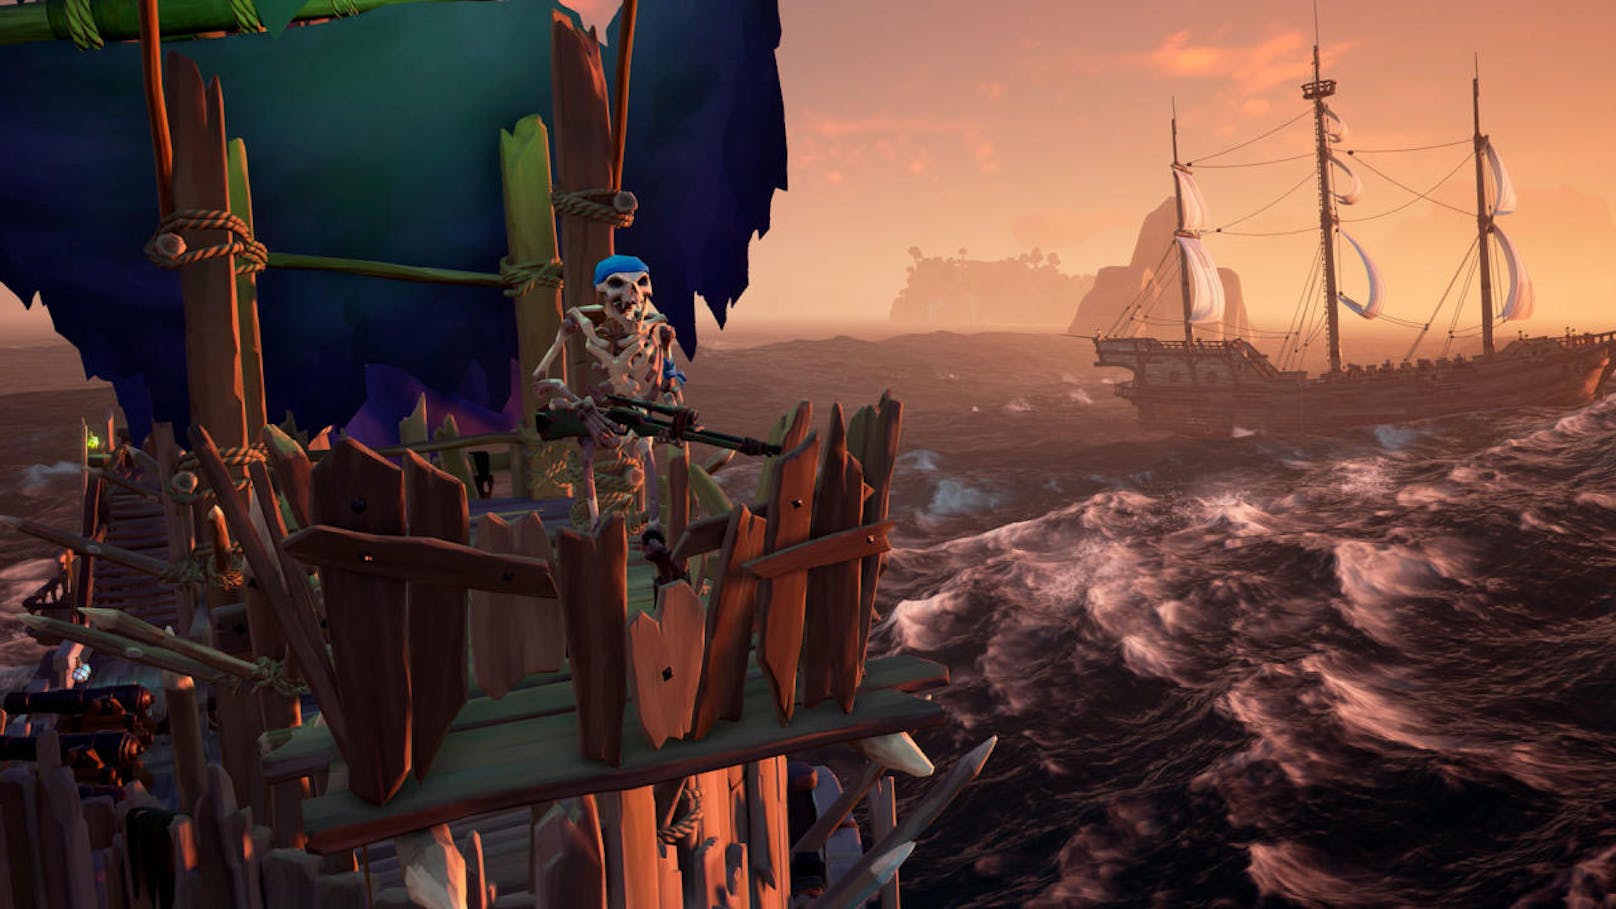 Ab sofort ist die zweite große Content-Erweiterung Cursed Sails für Sea of Thieves auf Xbox One und Windows 10 verfügbar. Furchterregende Skelettschiffe, die Brigantine - das neue Schiff für drei Spieler - und ein frisches Allianzen-System stehen bereit. Alle neuen Inhalte lernt man über die dreiwöchige Kampagne kennen, die wöchentlich neue Ziele und Belohnungen beinhaltet. Die Cursed Sails-Kampagne und das Content-Update sind für alle Sea of Thieves-Spieler kostenlos verfügbar. Alle Features stehen auch nach der zeitlich begrenzten Kampagne bereit.